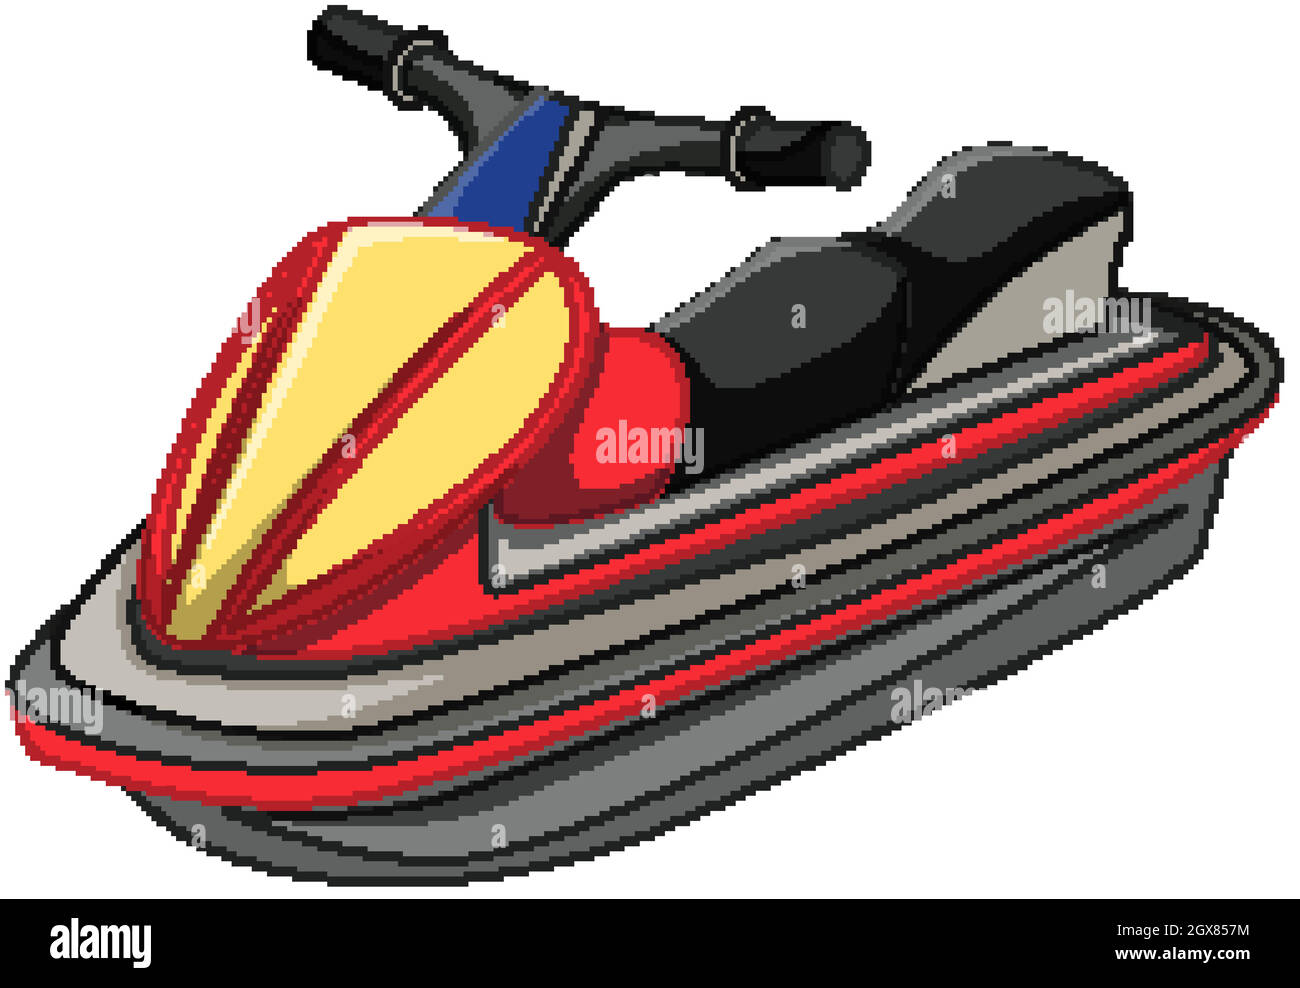 Moto d'acqua o jet boat in stile cartoon isolato su sfondo bianco Illustrazione Vettoriale